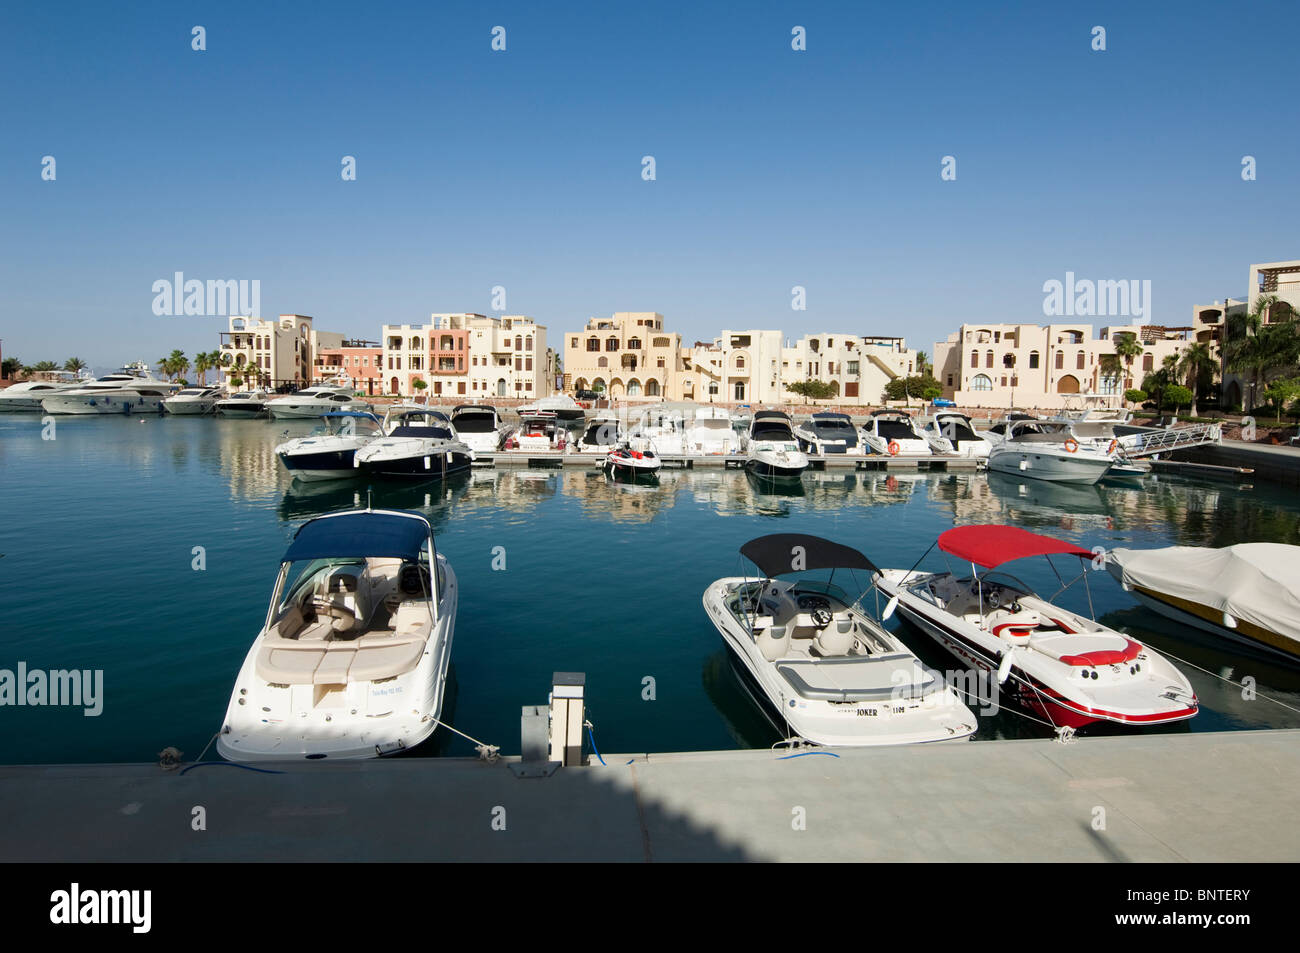 Aqaba Southern Hotel Area and Marina Stock Photo